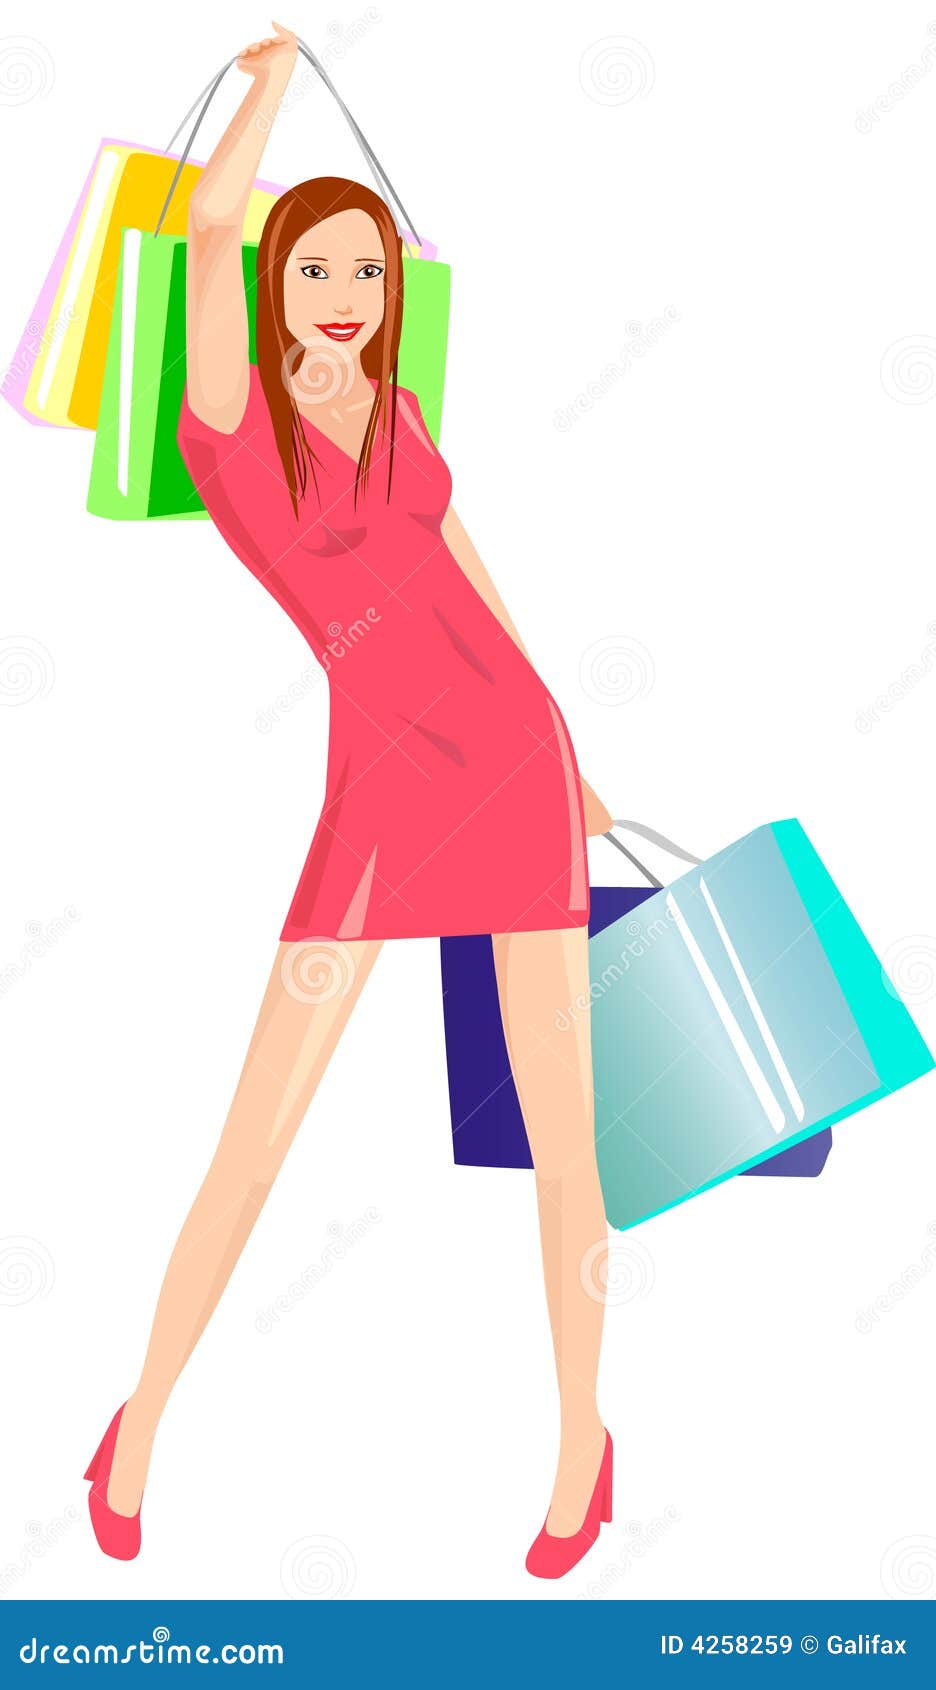 Go shopping! stock vector. Illustration of dress, business - 4258259